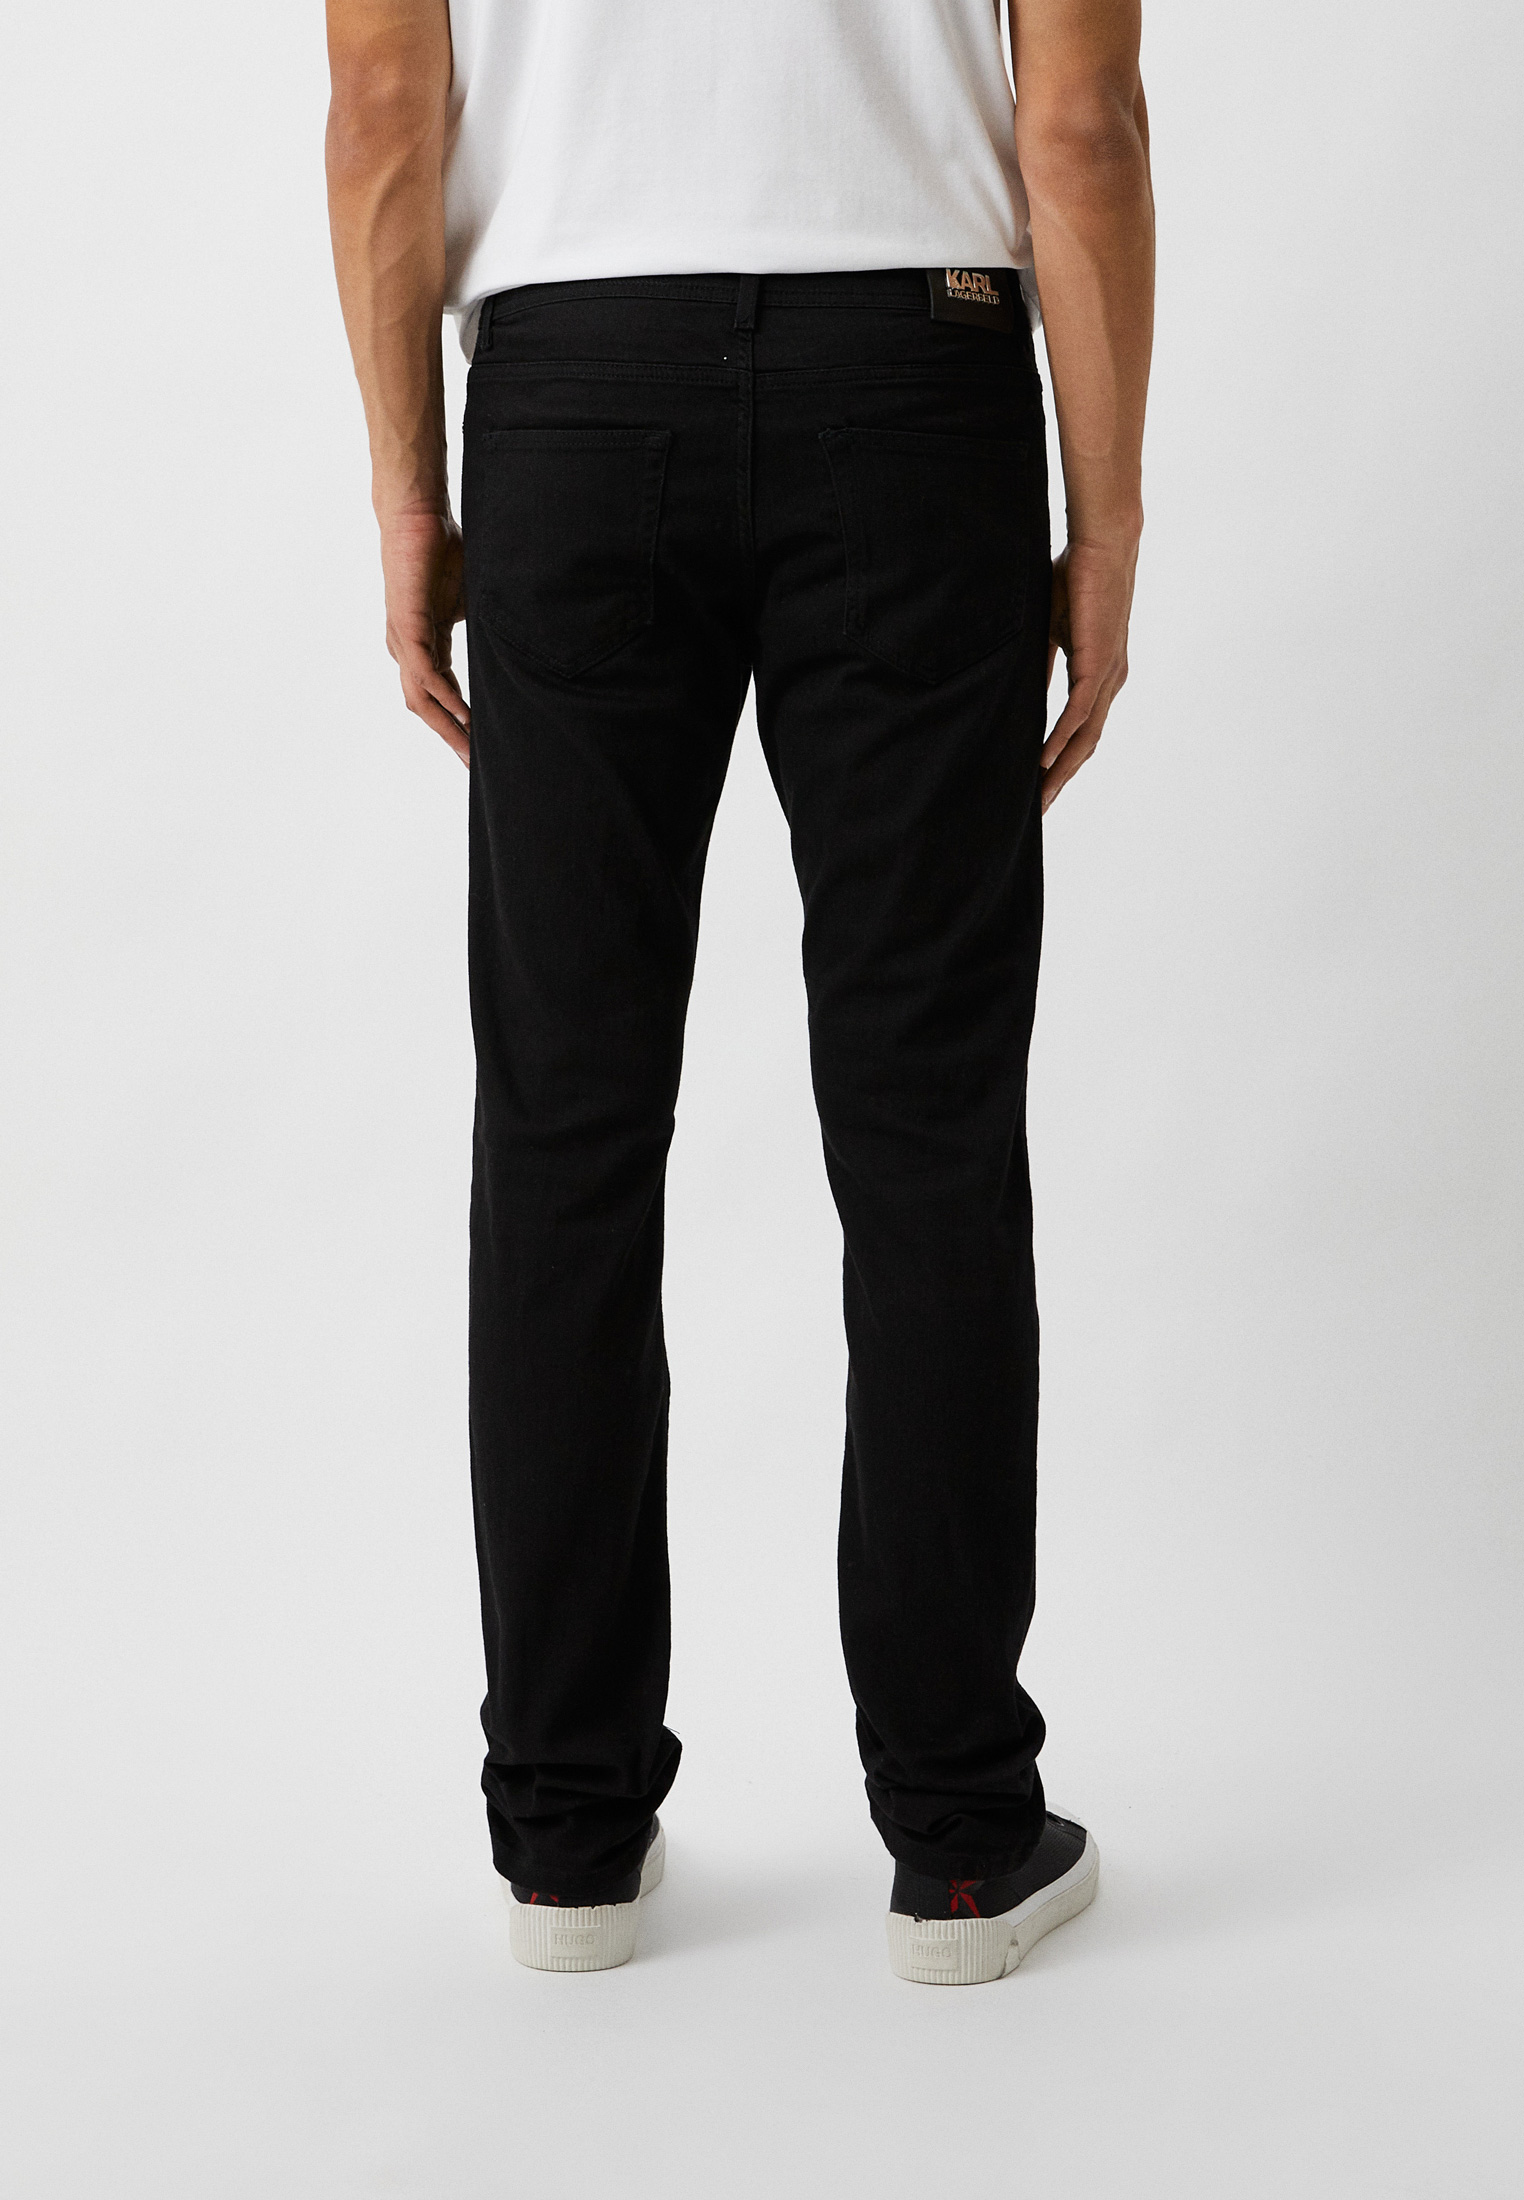 Мужские зауженные джинсы Karl Lagerfeld (Карл Лагерфельд) 265840-500830: изображение 3